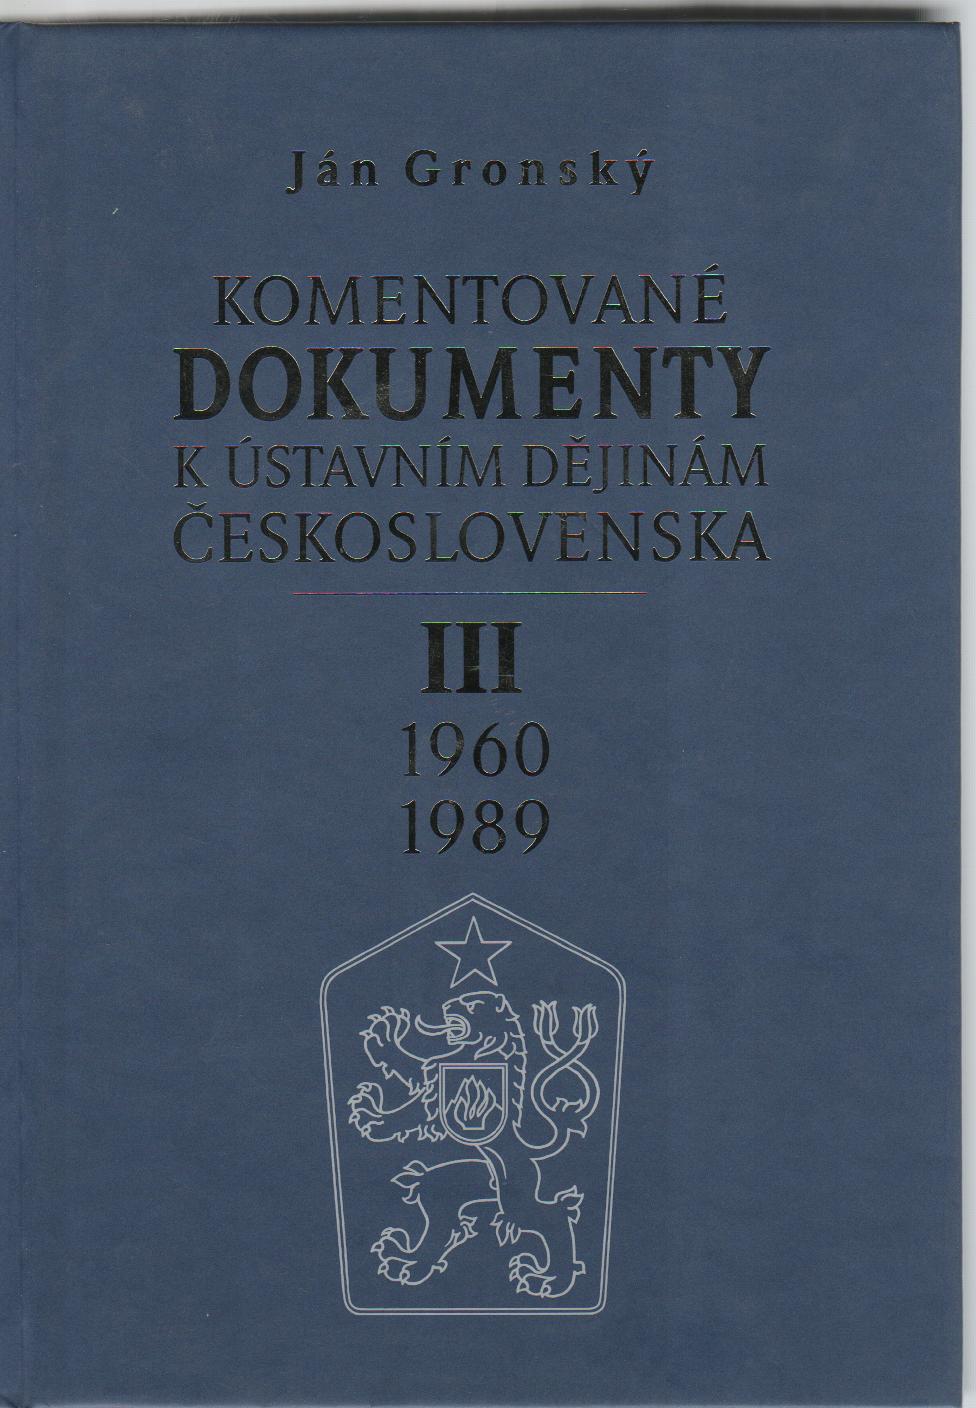 Komentované dokumenty k ústavním dějinám Československa III 1960-1989